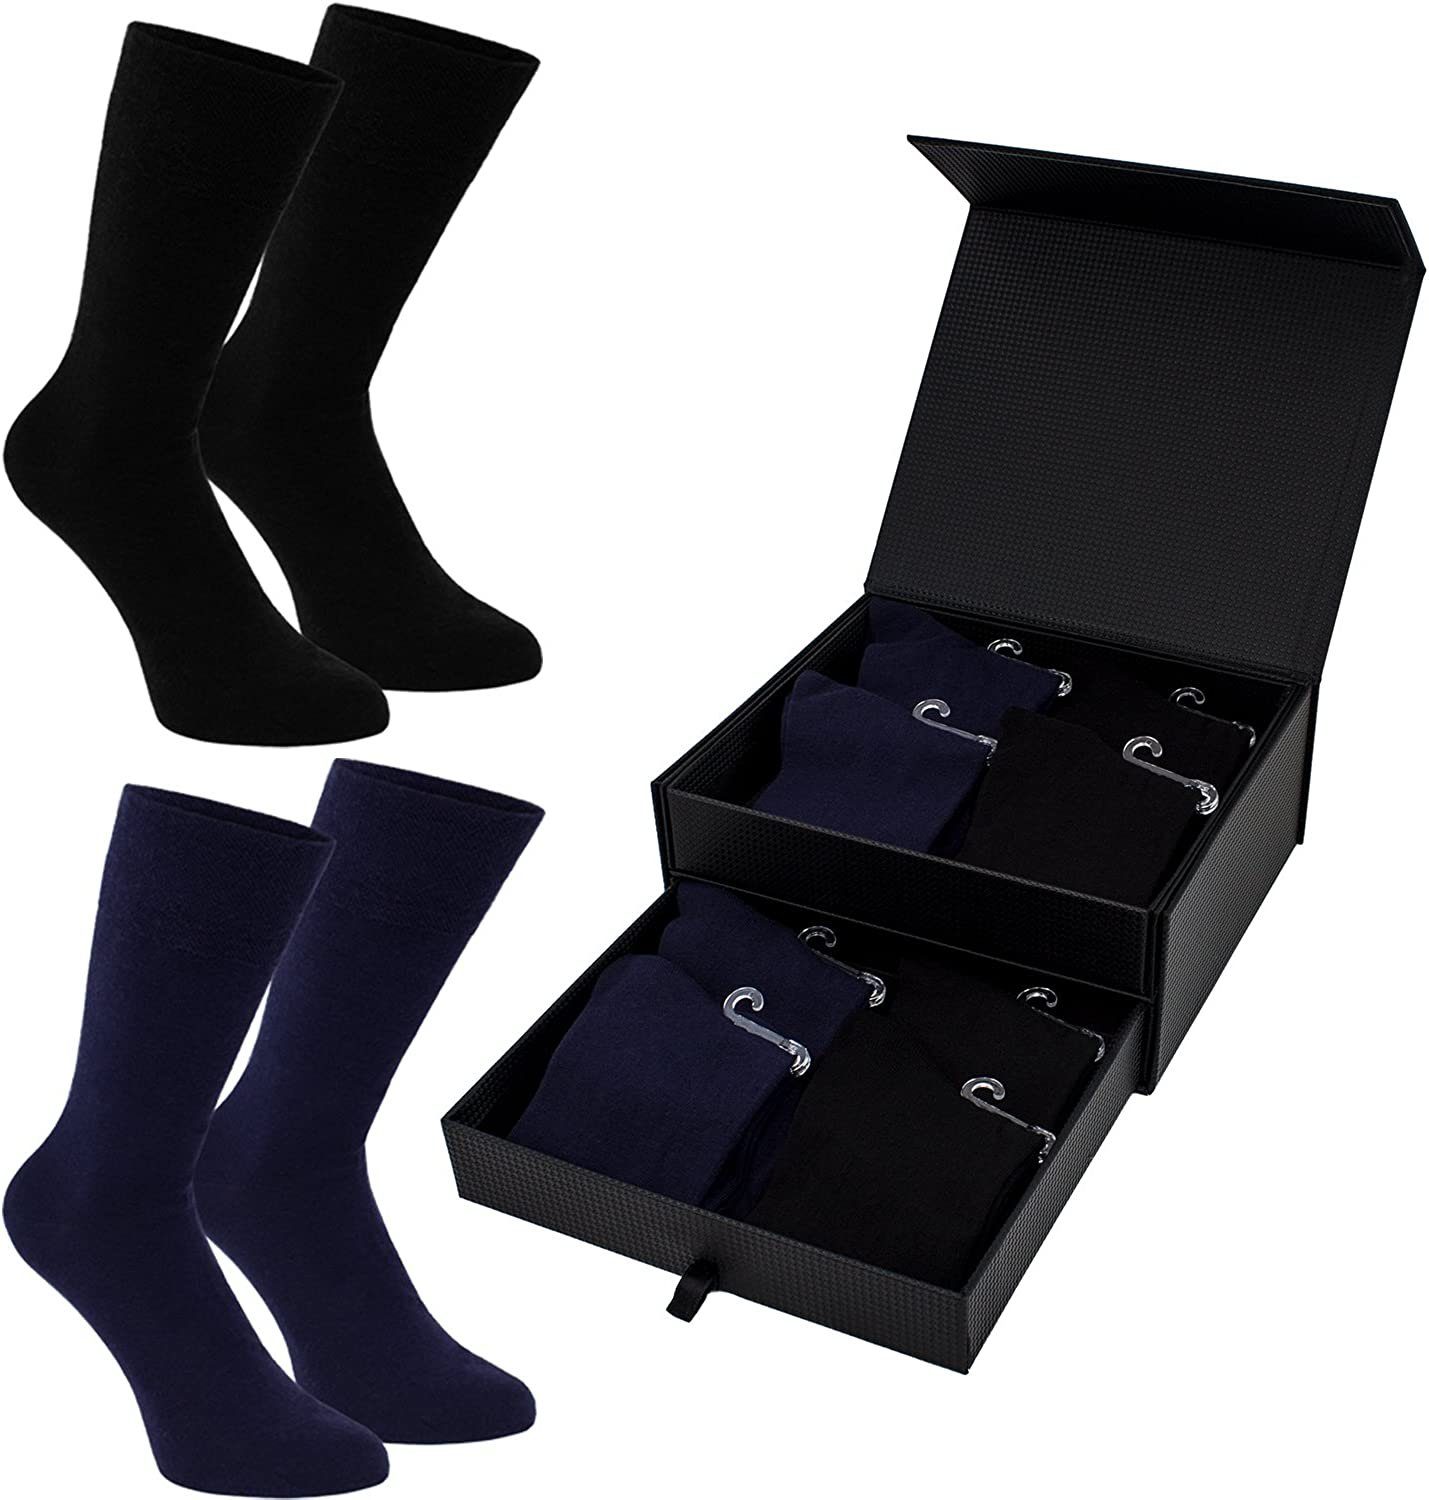 BRUBAKER Socken Herren Socken - Lenzing Modal - Schwarz, Dunkelblau -  Premium Qualität (Business Socken, 8-Paar, Größe 41-46) Lange Herrensocken  in Geschenk Box - Weich und Bequem